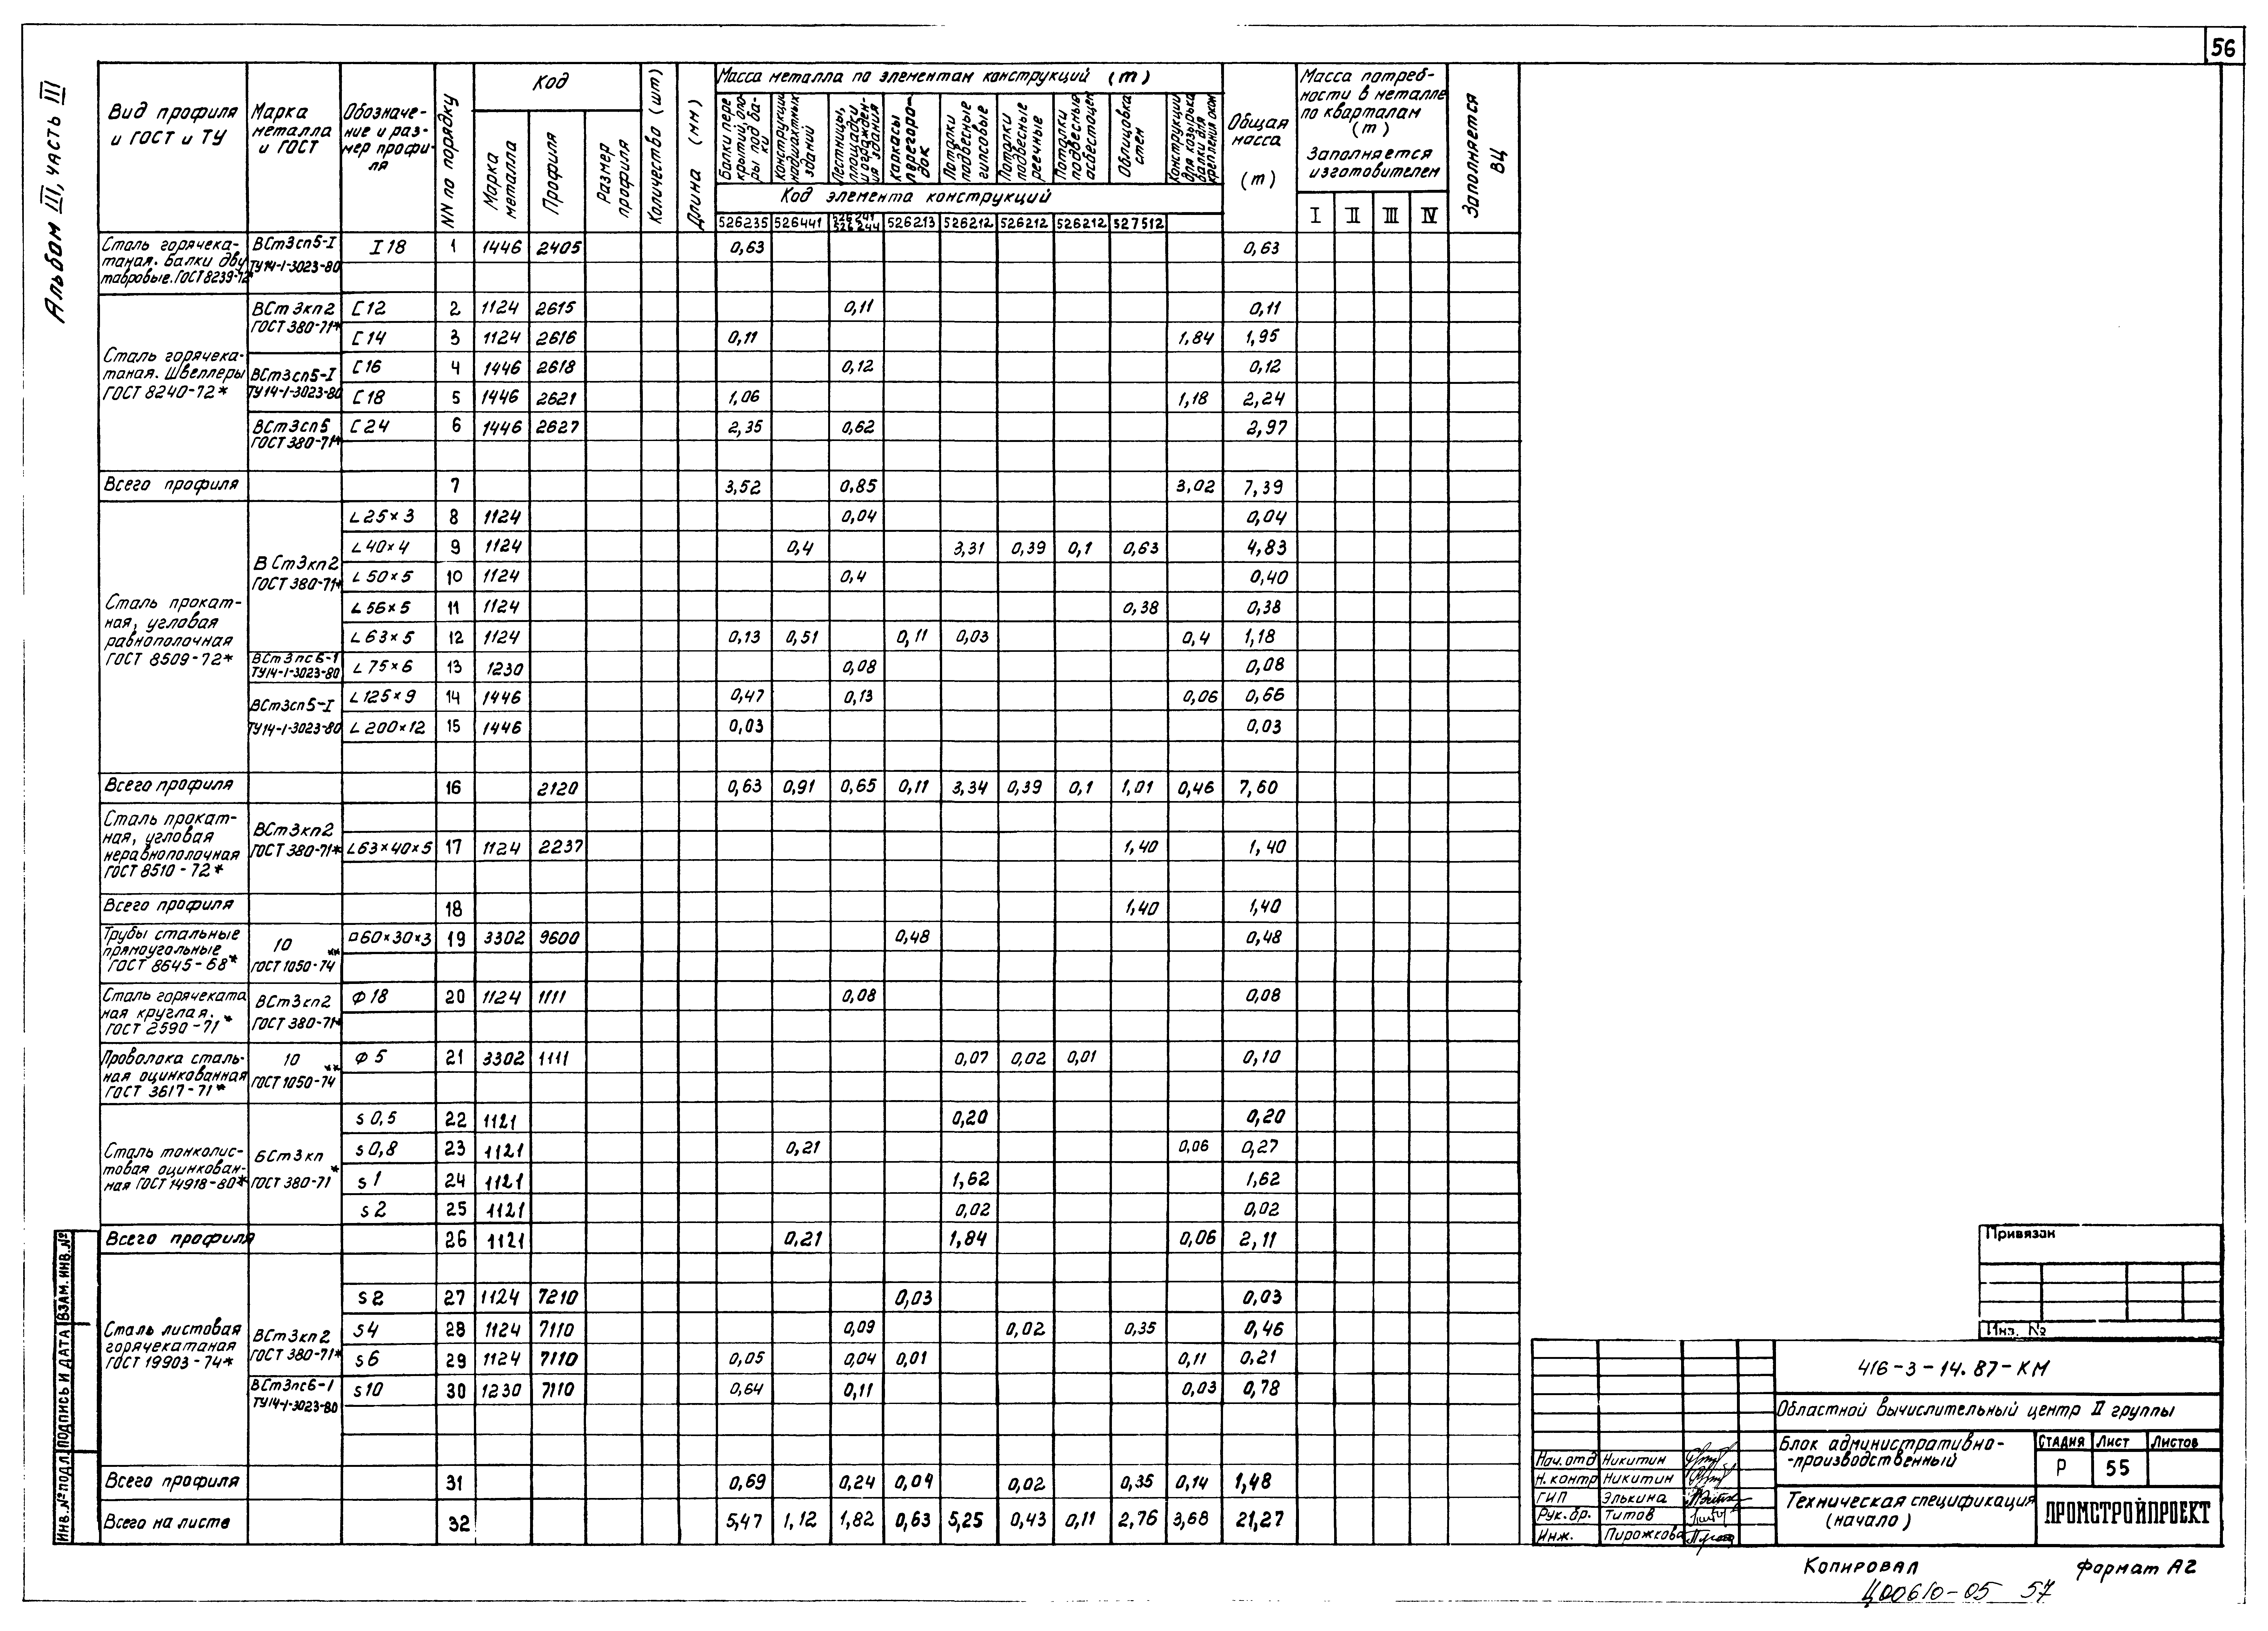 Типовой проект 416-3-14.87